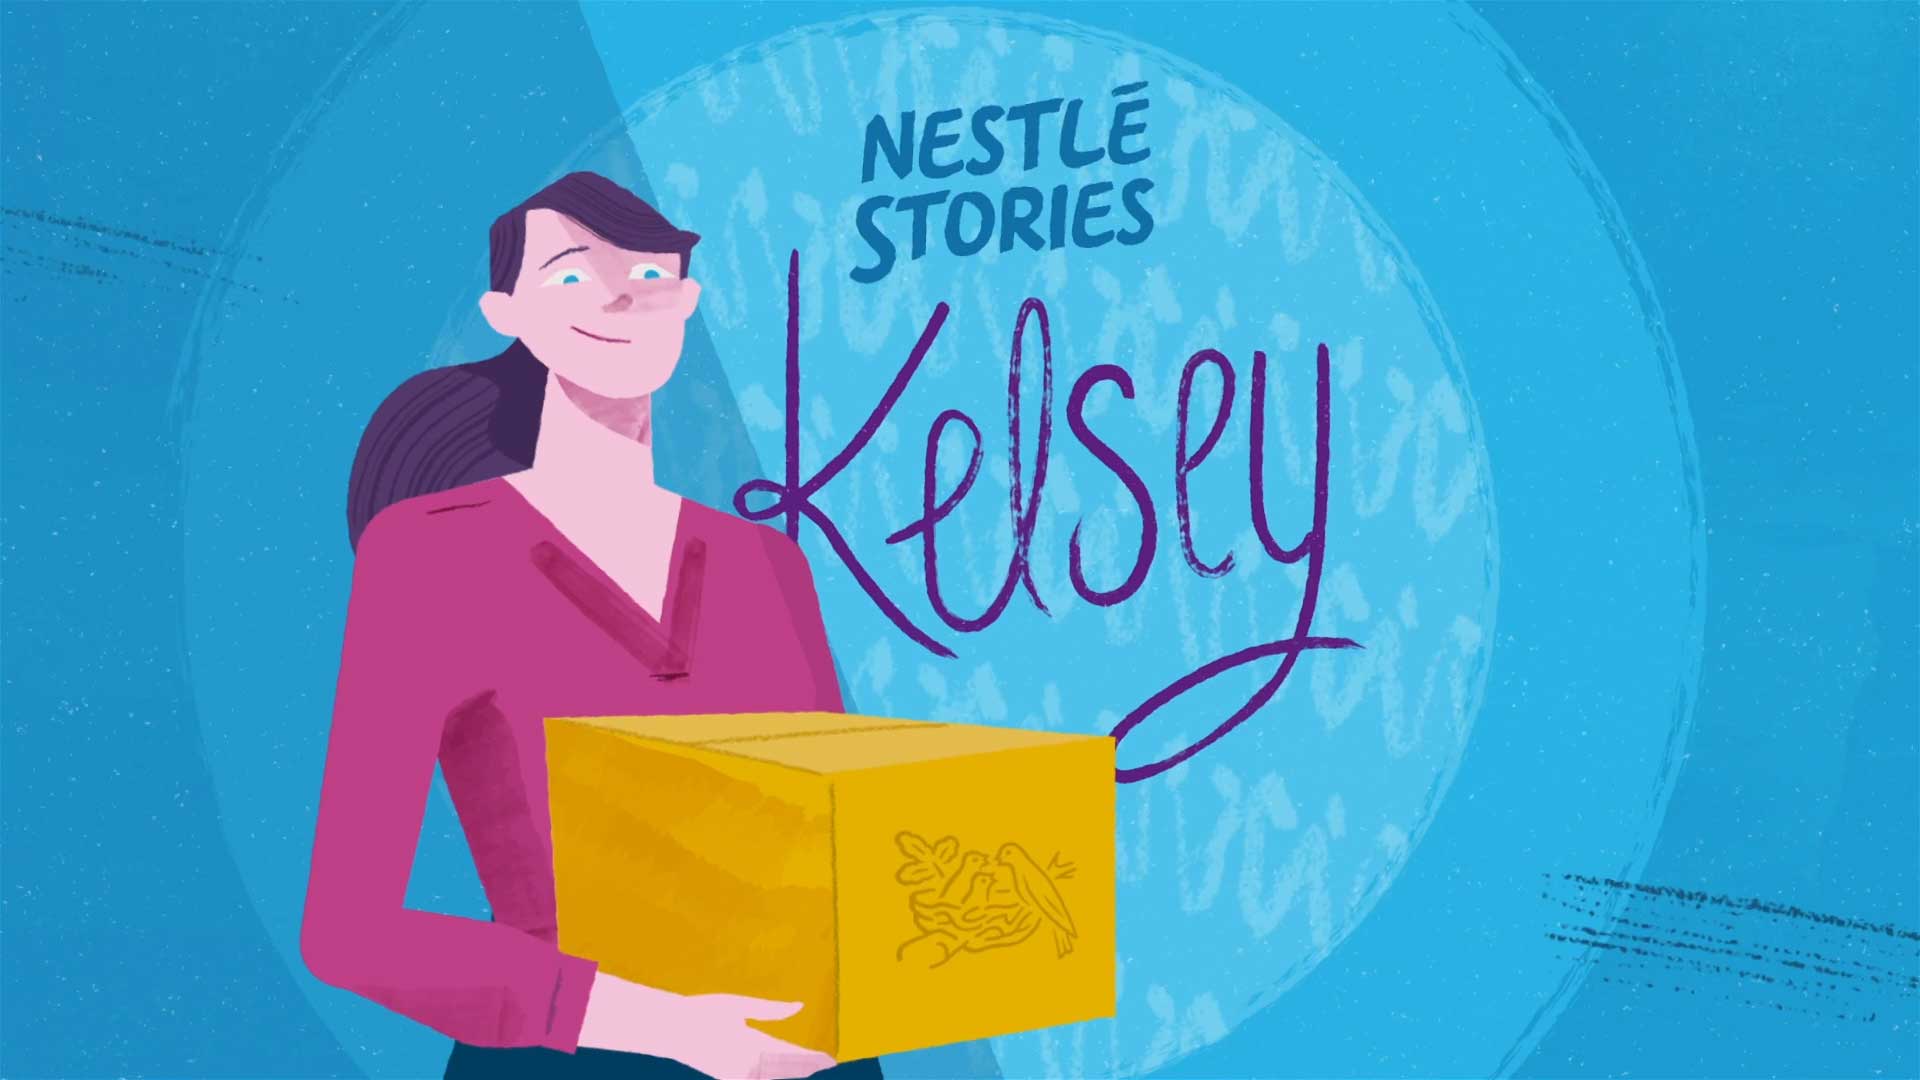 Illustration of a Nestlé employee